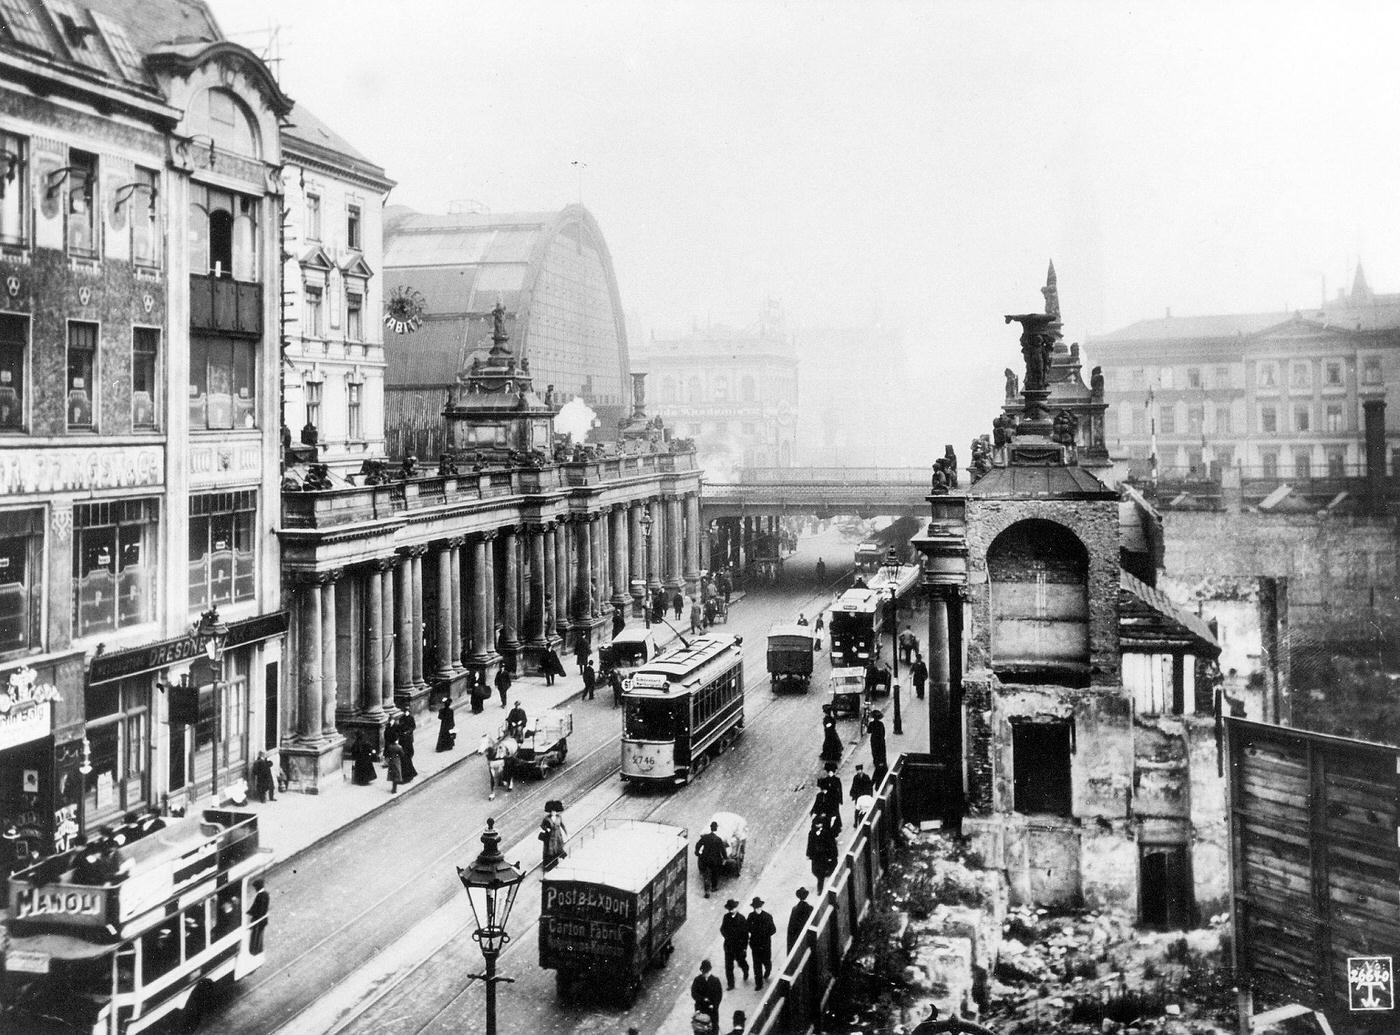 View of Königstrasse towards Bahnhof Alexanderplatz, Berlin Alexanderplatz, around 1900